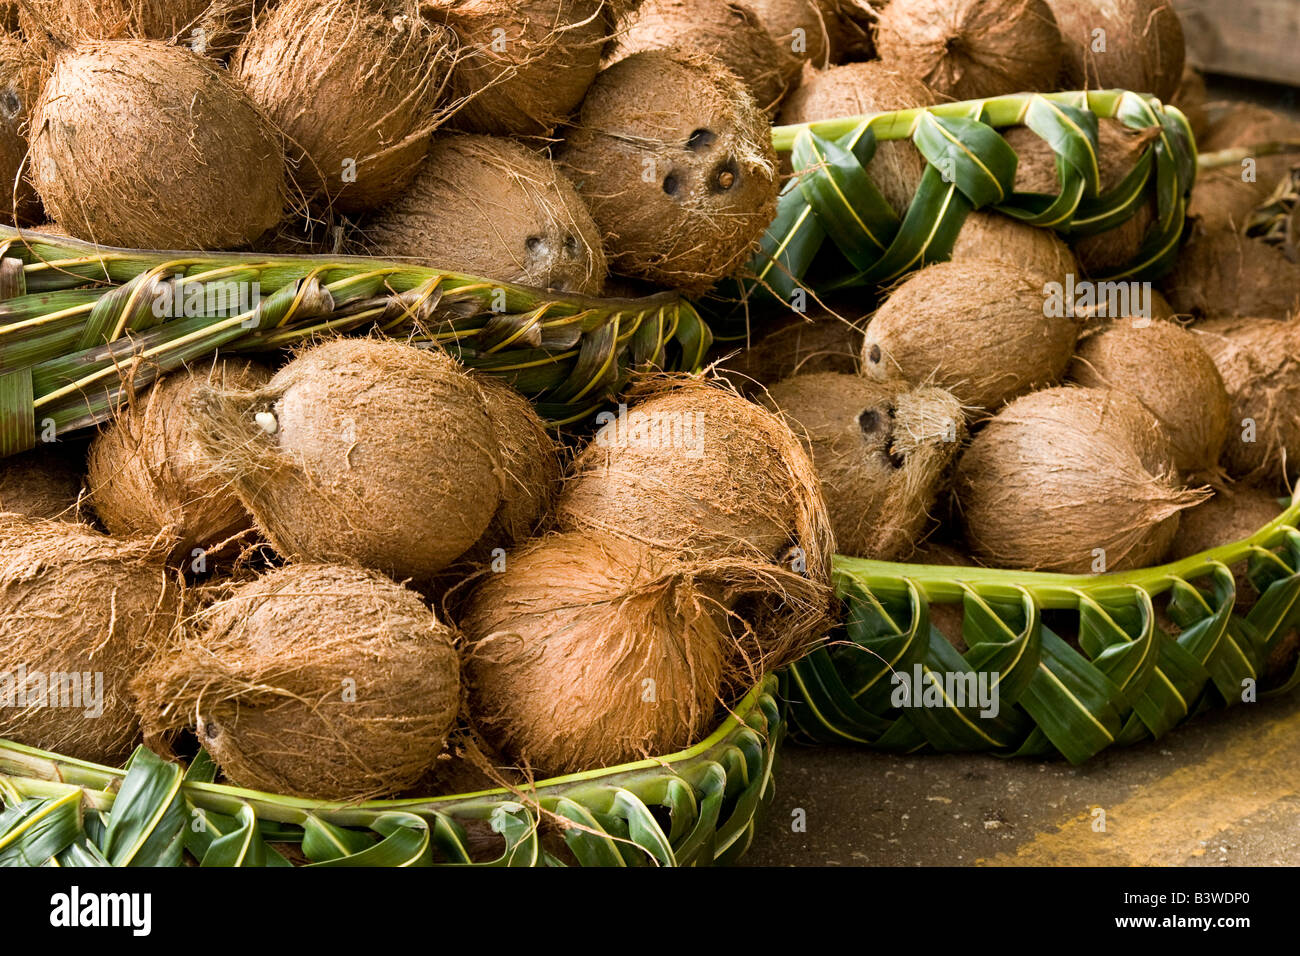 Ozeanien, Polynesien, Königreich Tonga. Anzeige der Kokosnüsse in geflochtenen Körben auf dem Markt zu verkaufen. Stockfoto